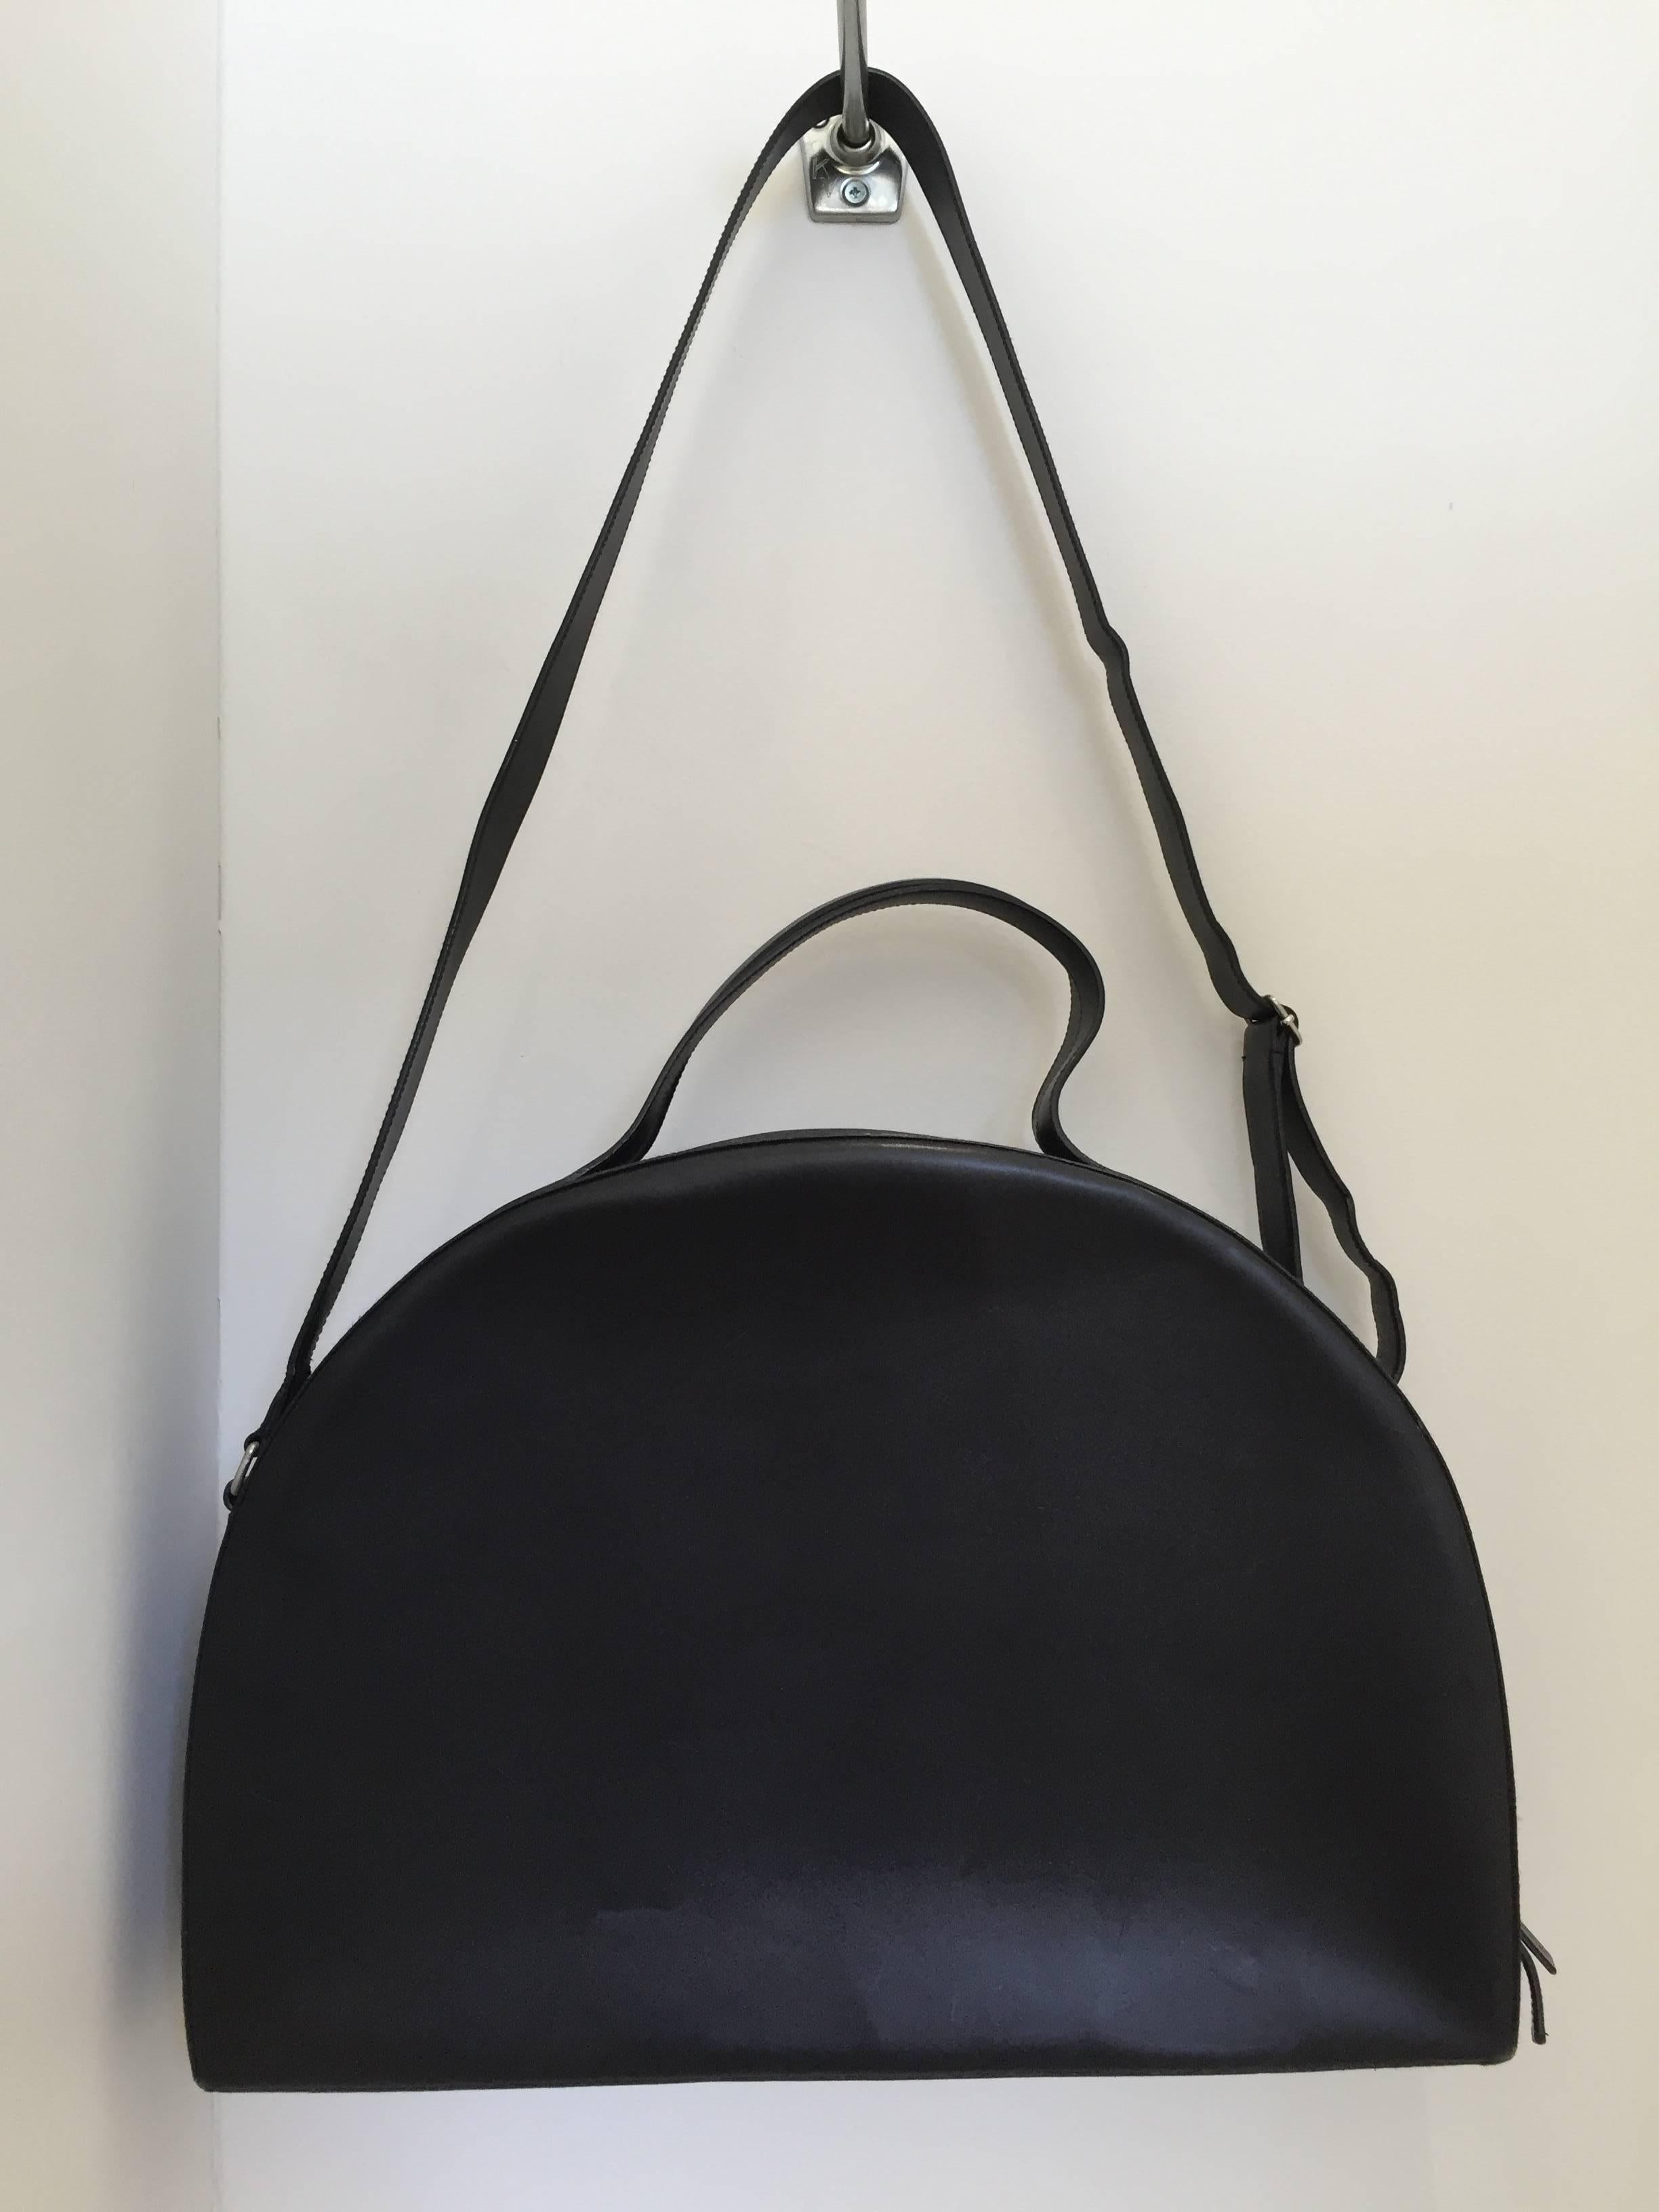 Rare sac en cuir noir vintage Helmut Lang des années 1990.
Légères rayures mineures sur les côtés du sac ( voir photos)
L'intérieur est parfait ( pas de tache/ pas de rayure)
Mesures du sac : 18